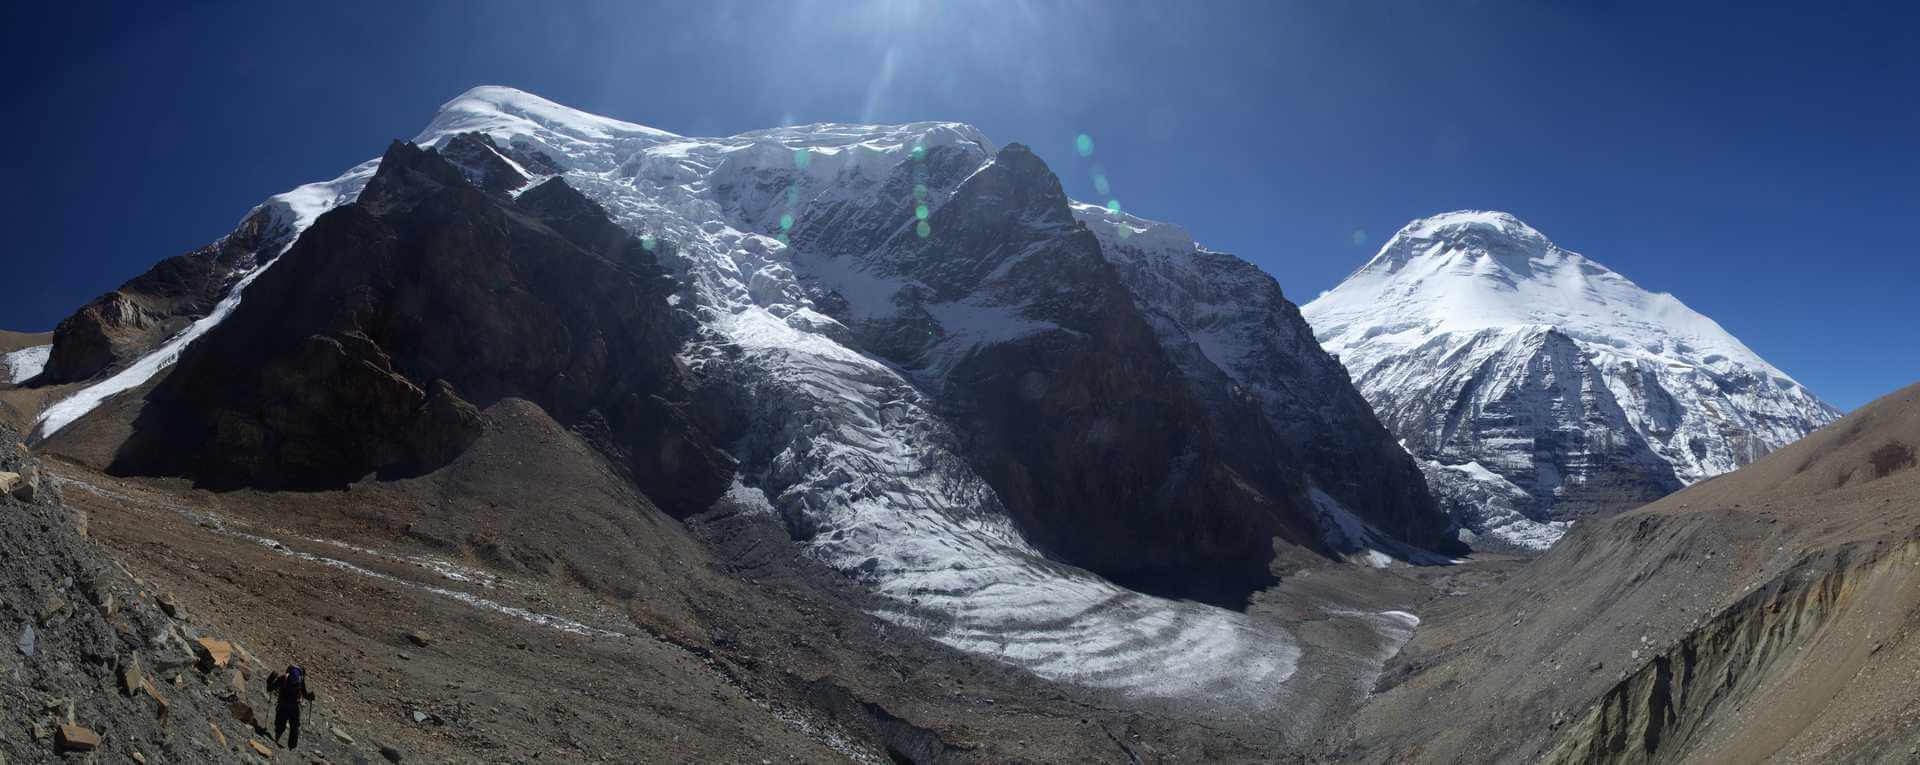 nepal-himalaje-french-pass